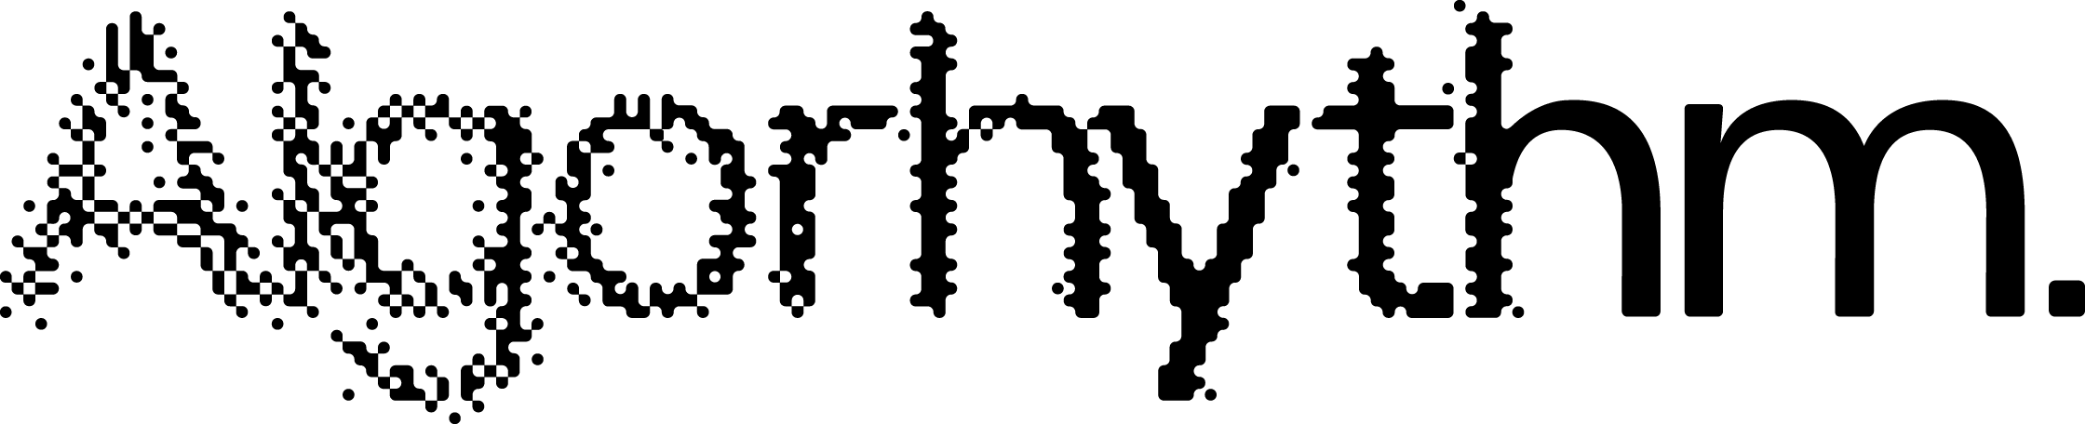 algorhythm-logo-bg